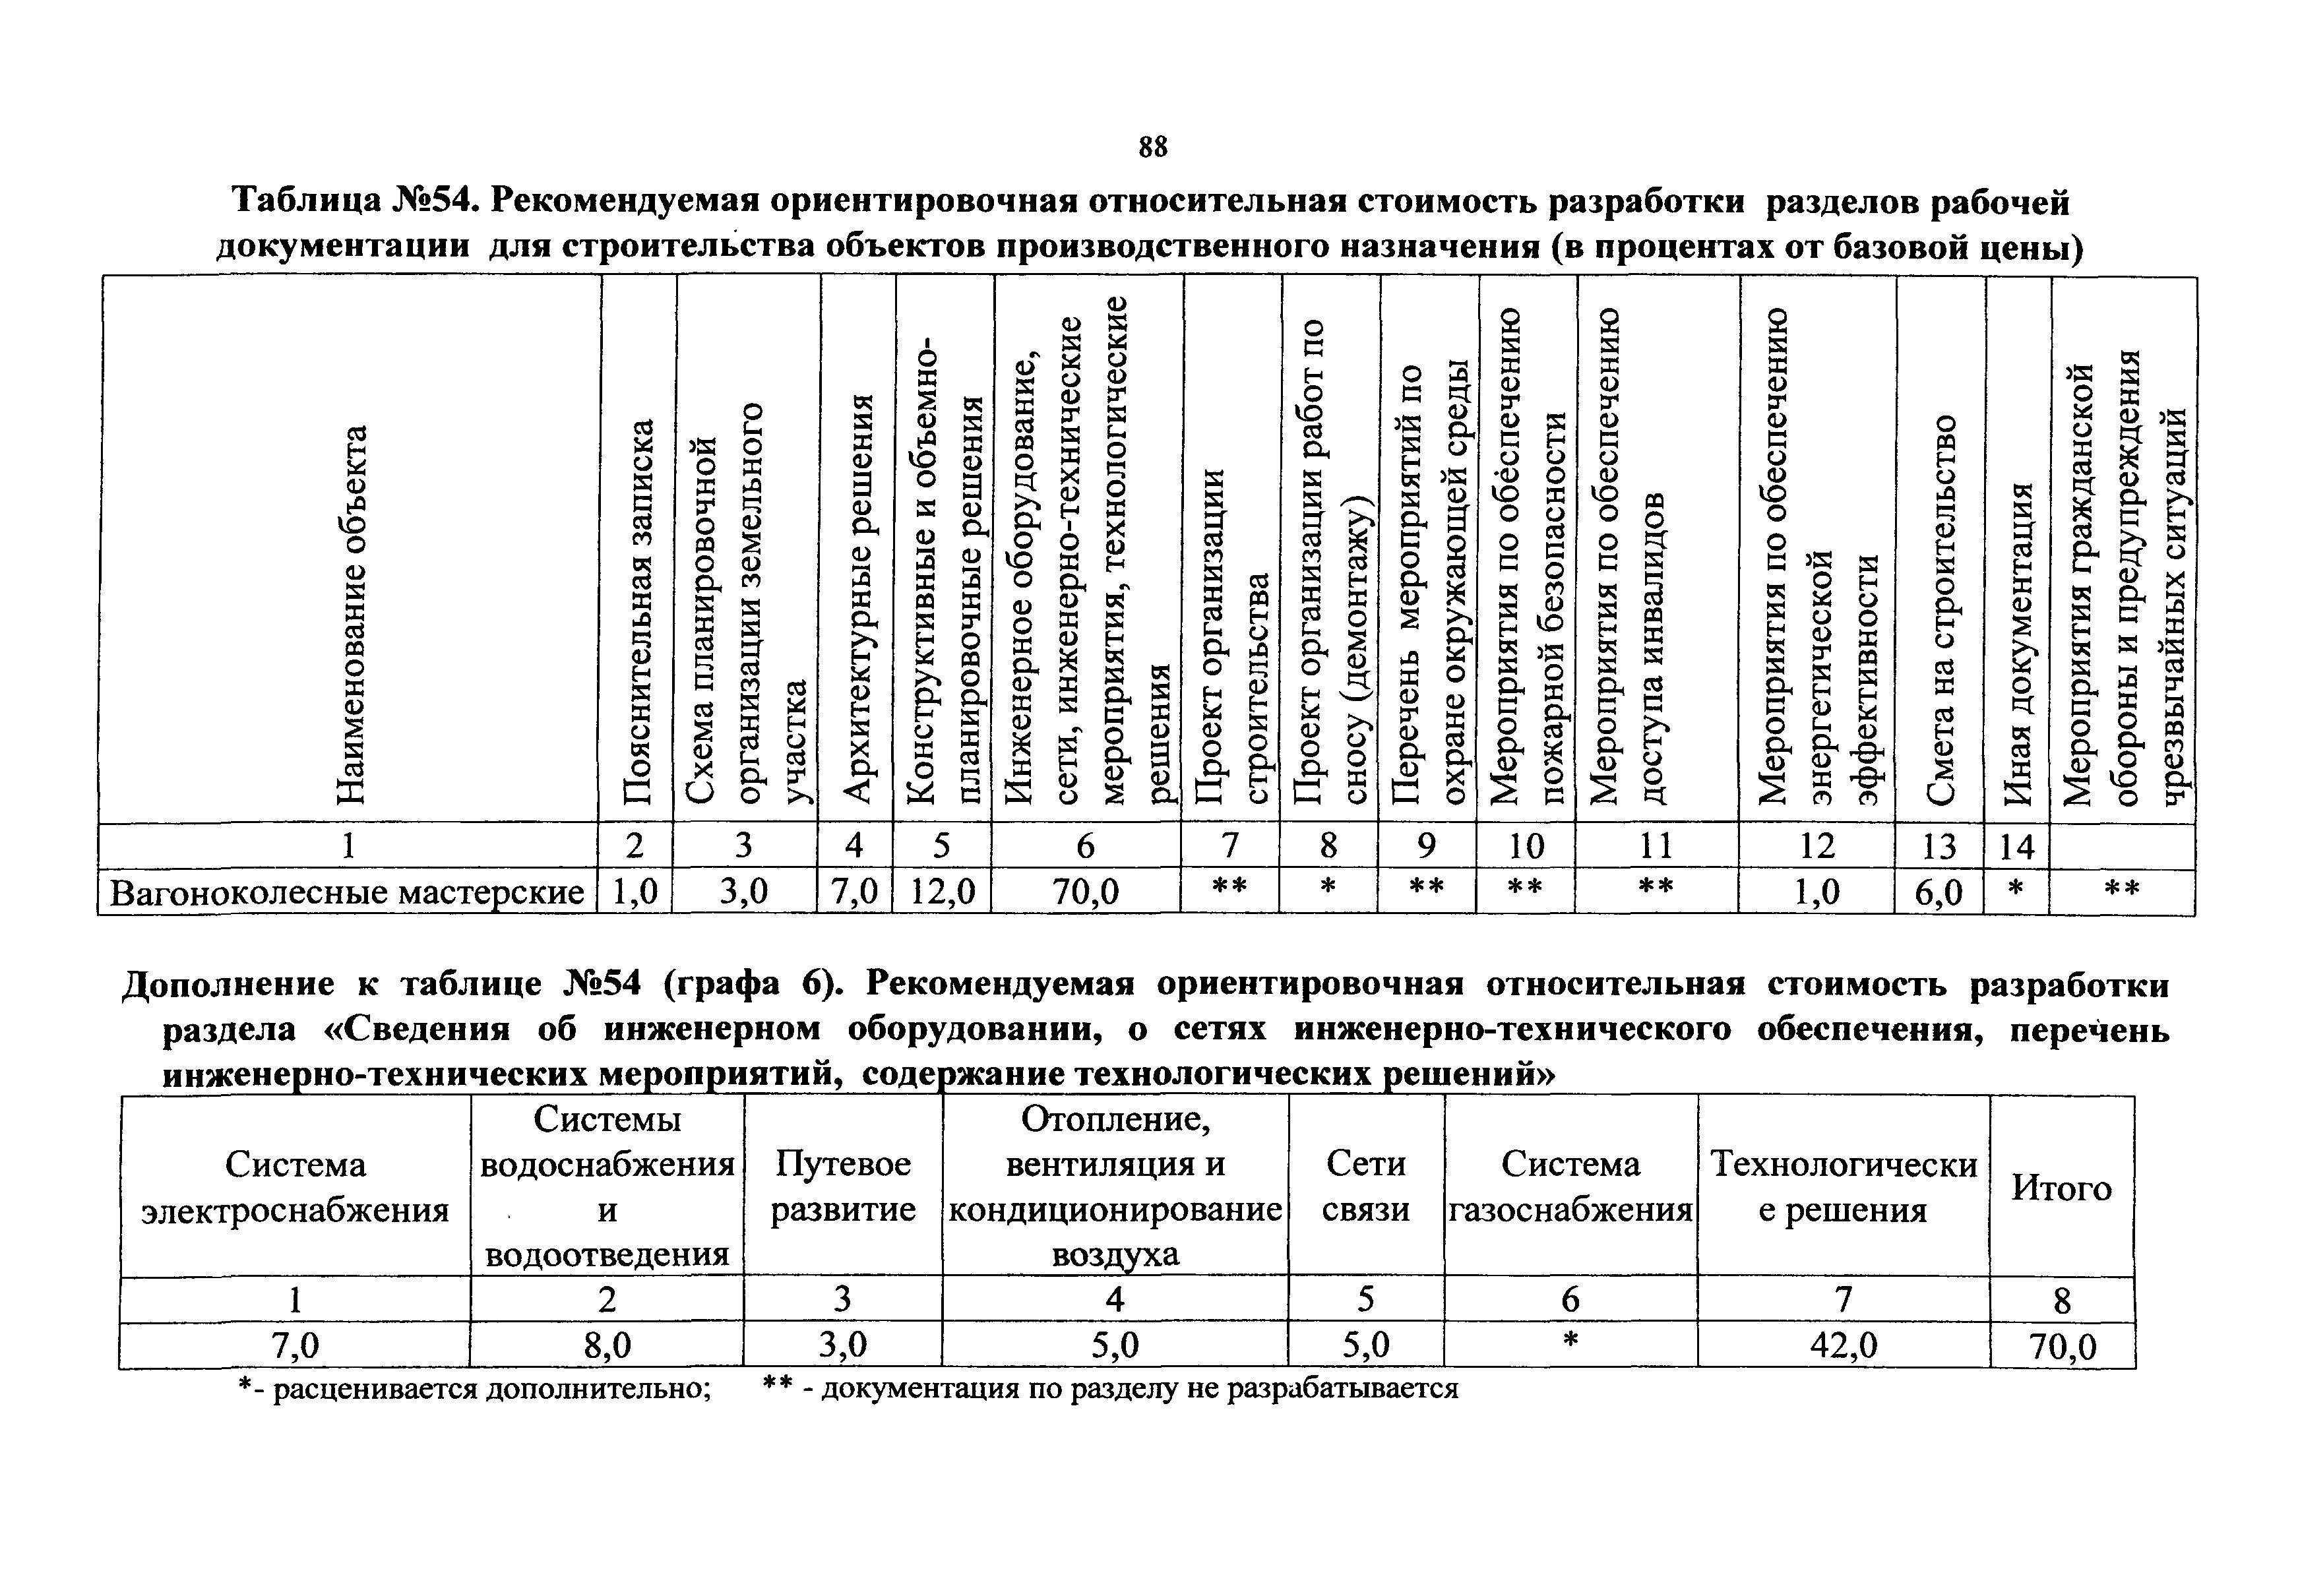 СБЦП 81-2001-09